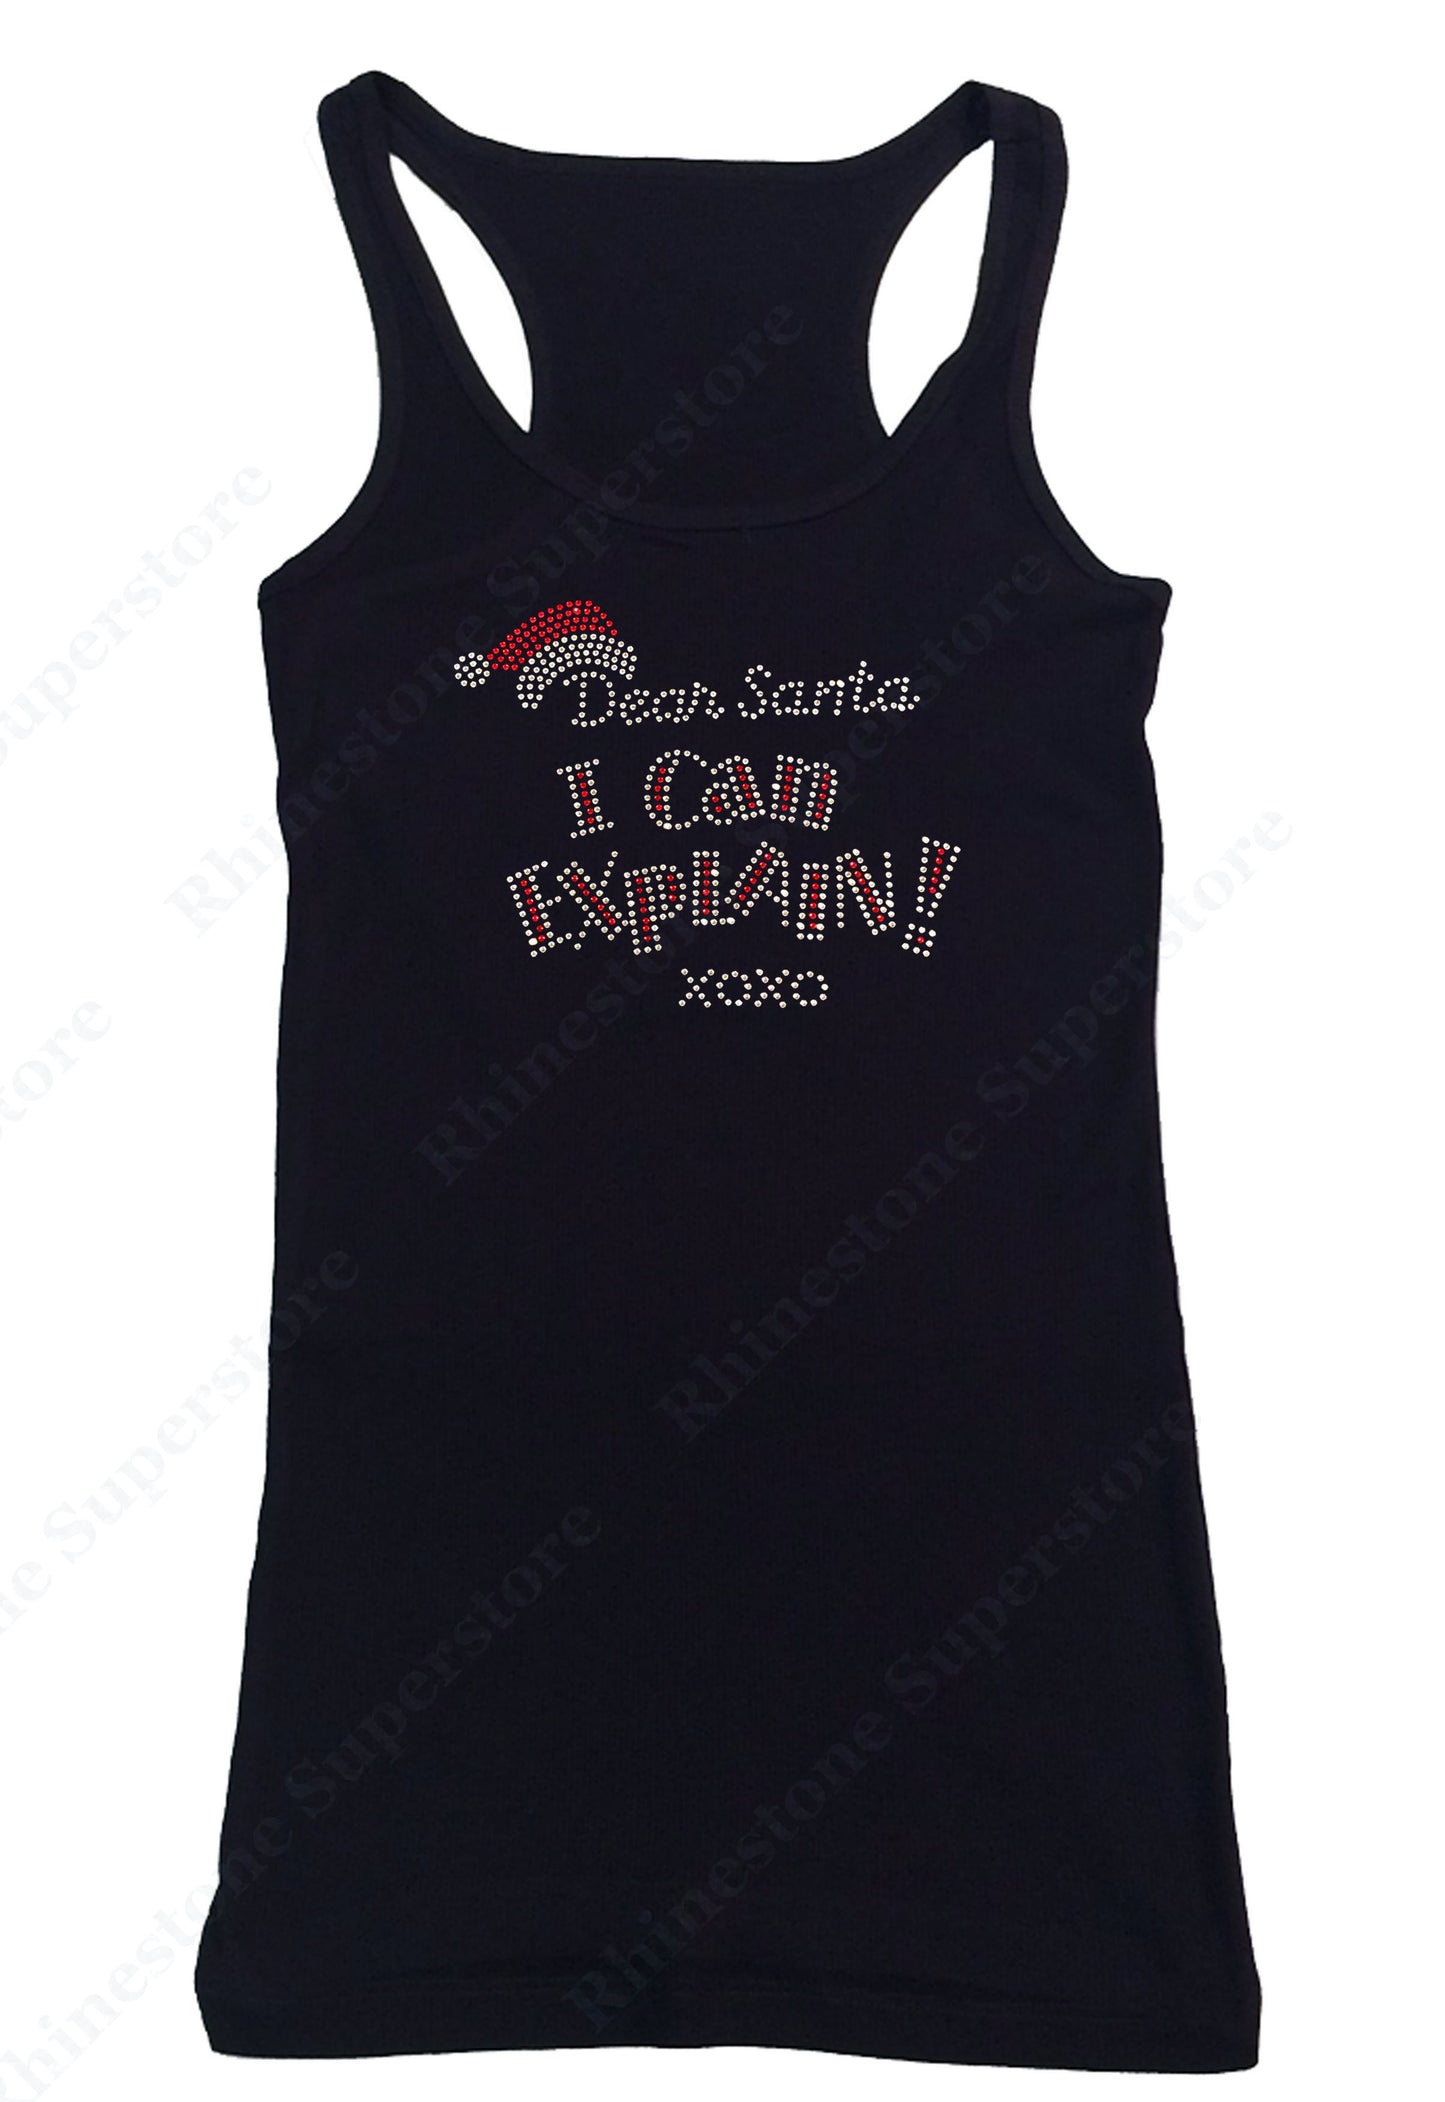 Womens T-shirt with Dear Santa I Can Explain XOXO in Rhinestones